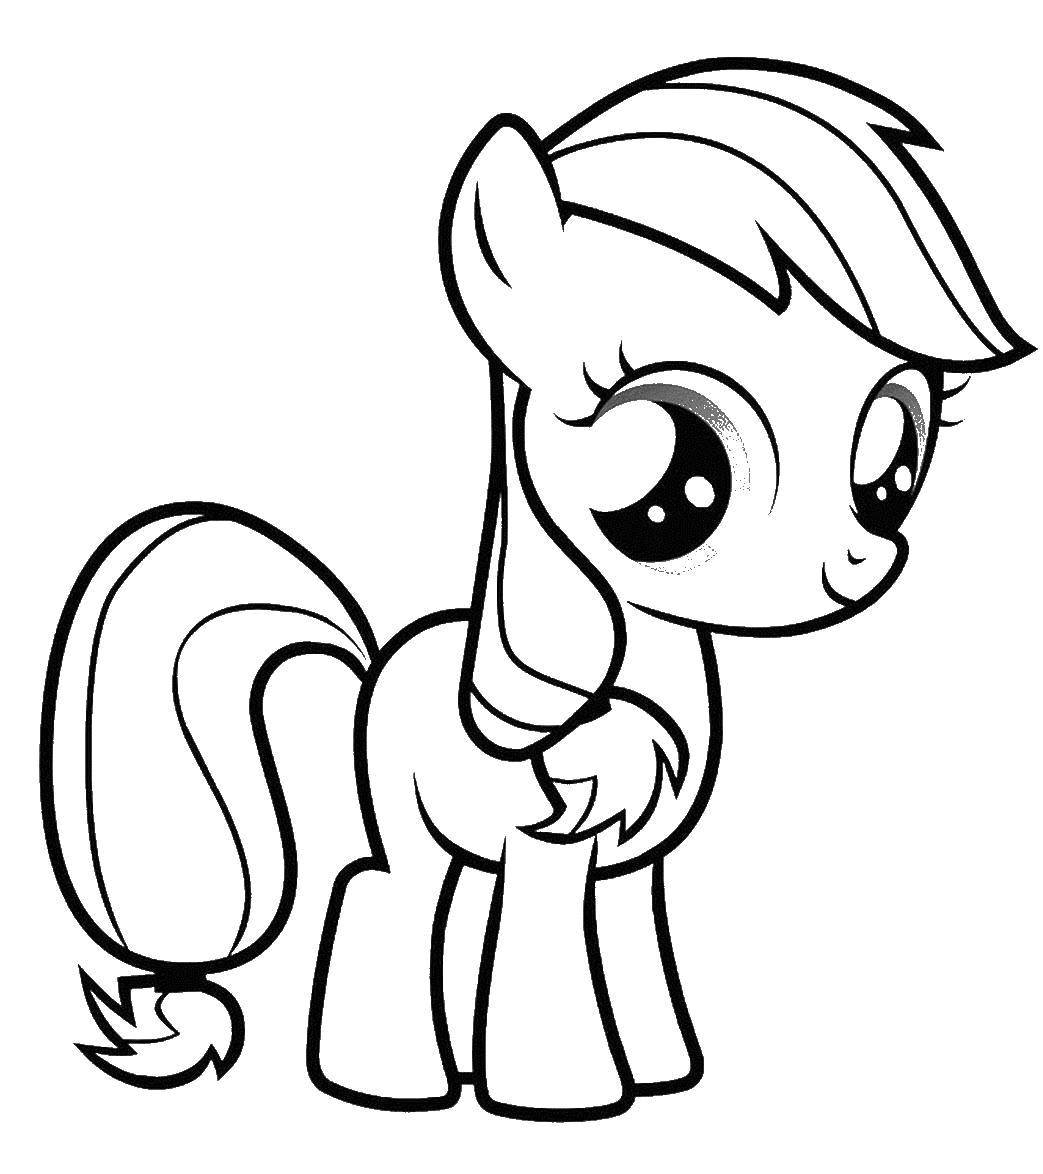 Название: Раскраска Пони. Категория: мой маленький пони. Теги: Пони, "My little pony".